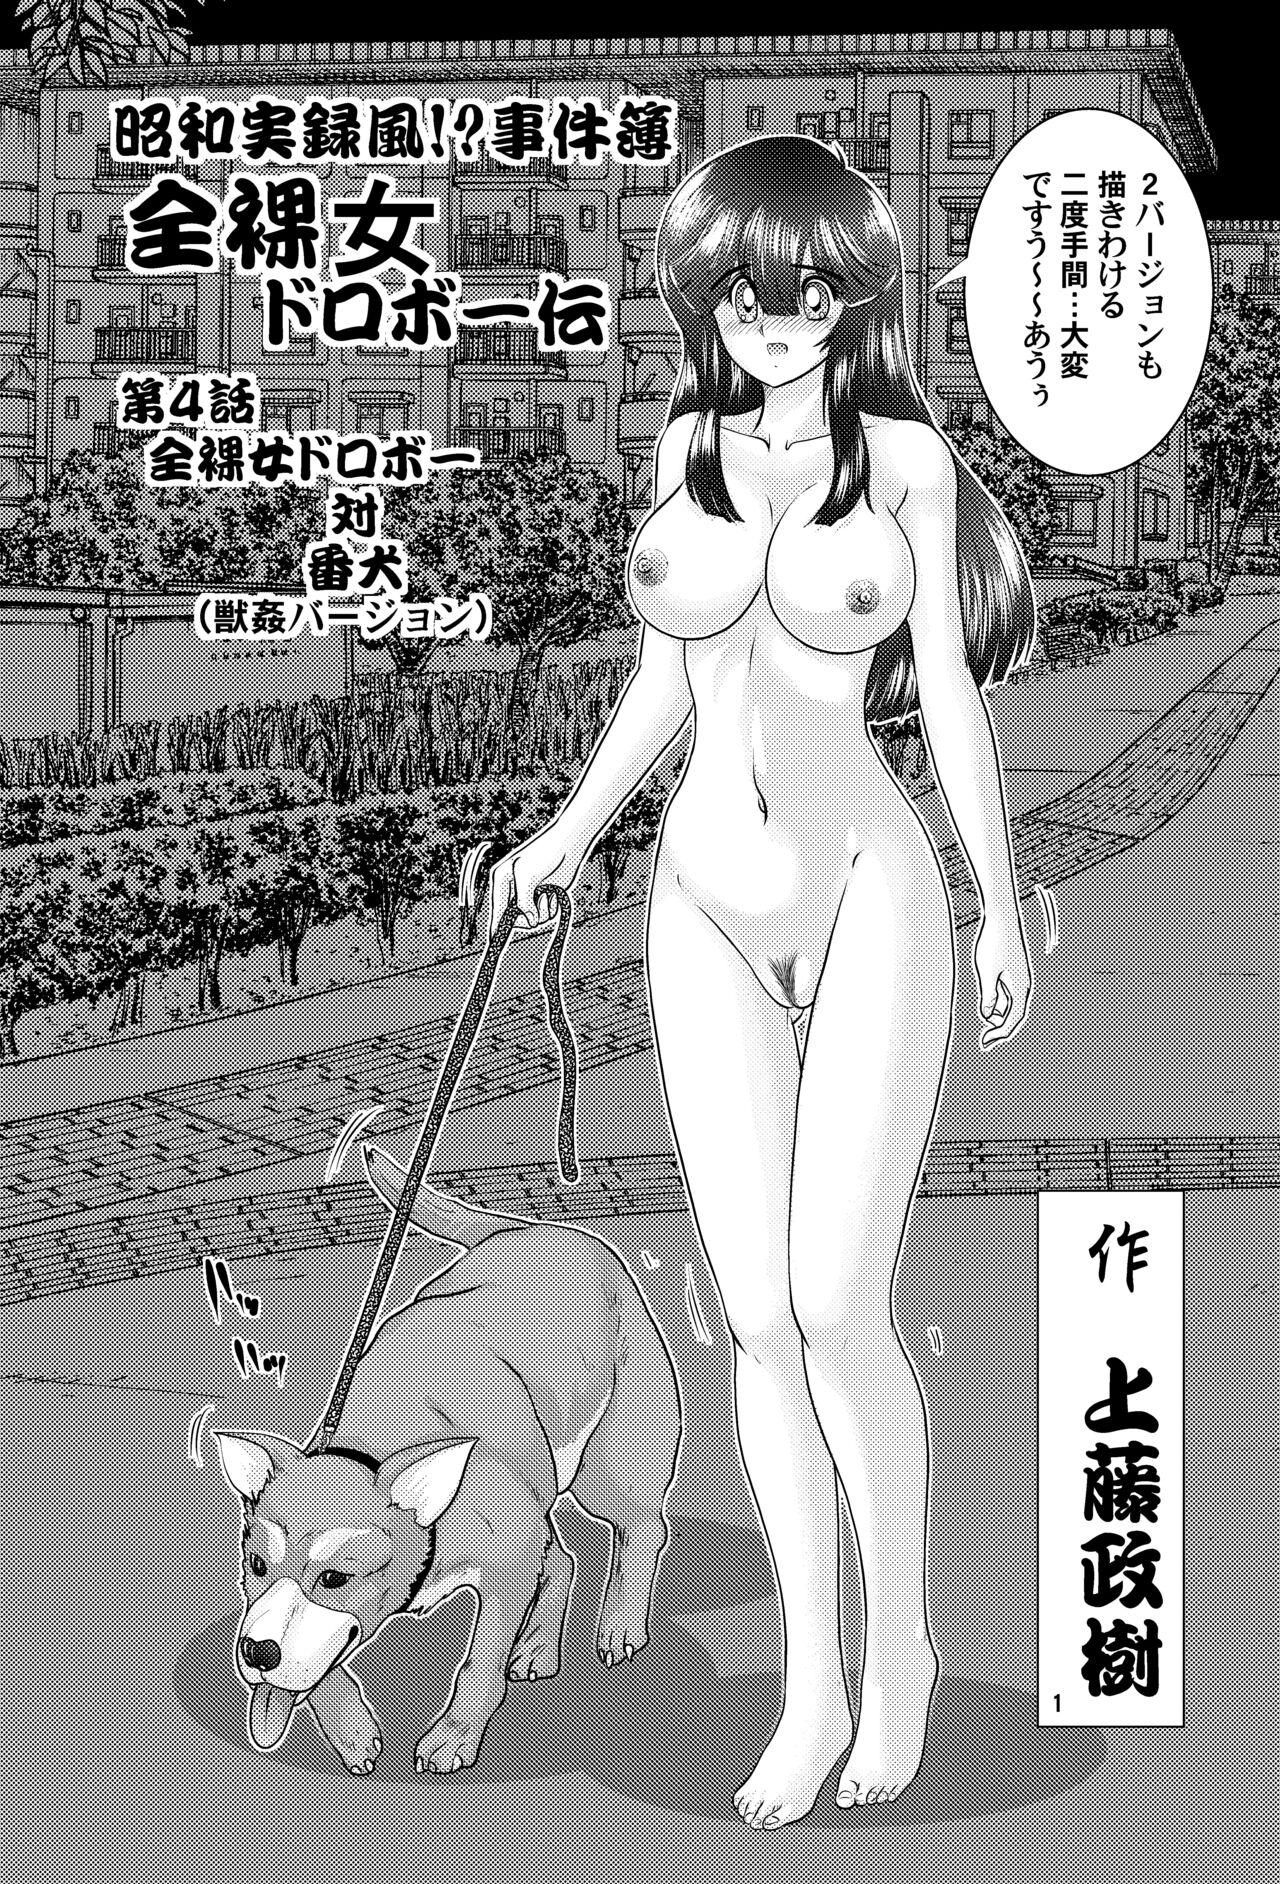 全裸女ドロボー伝 VS犬 獣姦バージョン 1